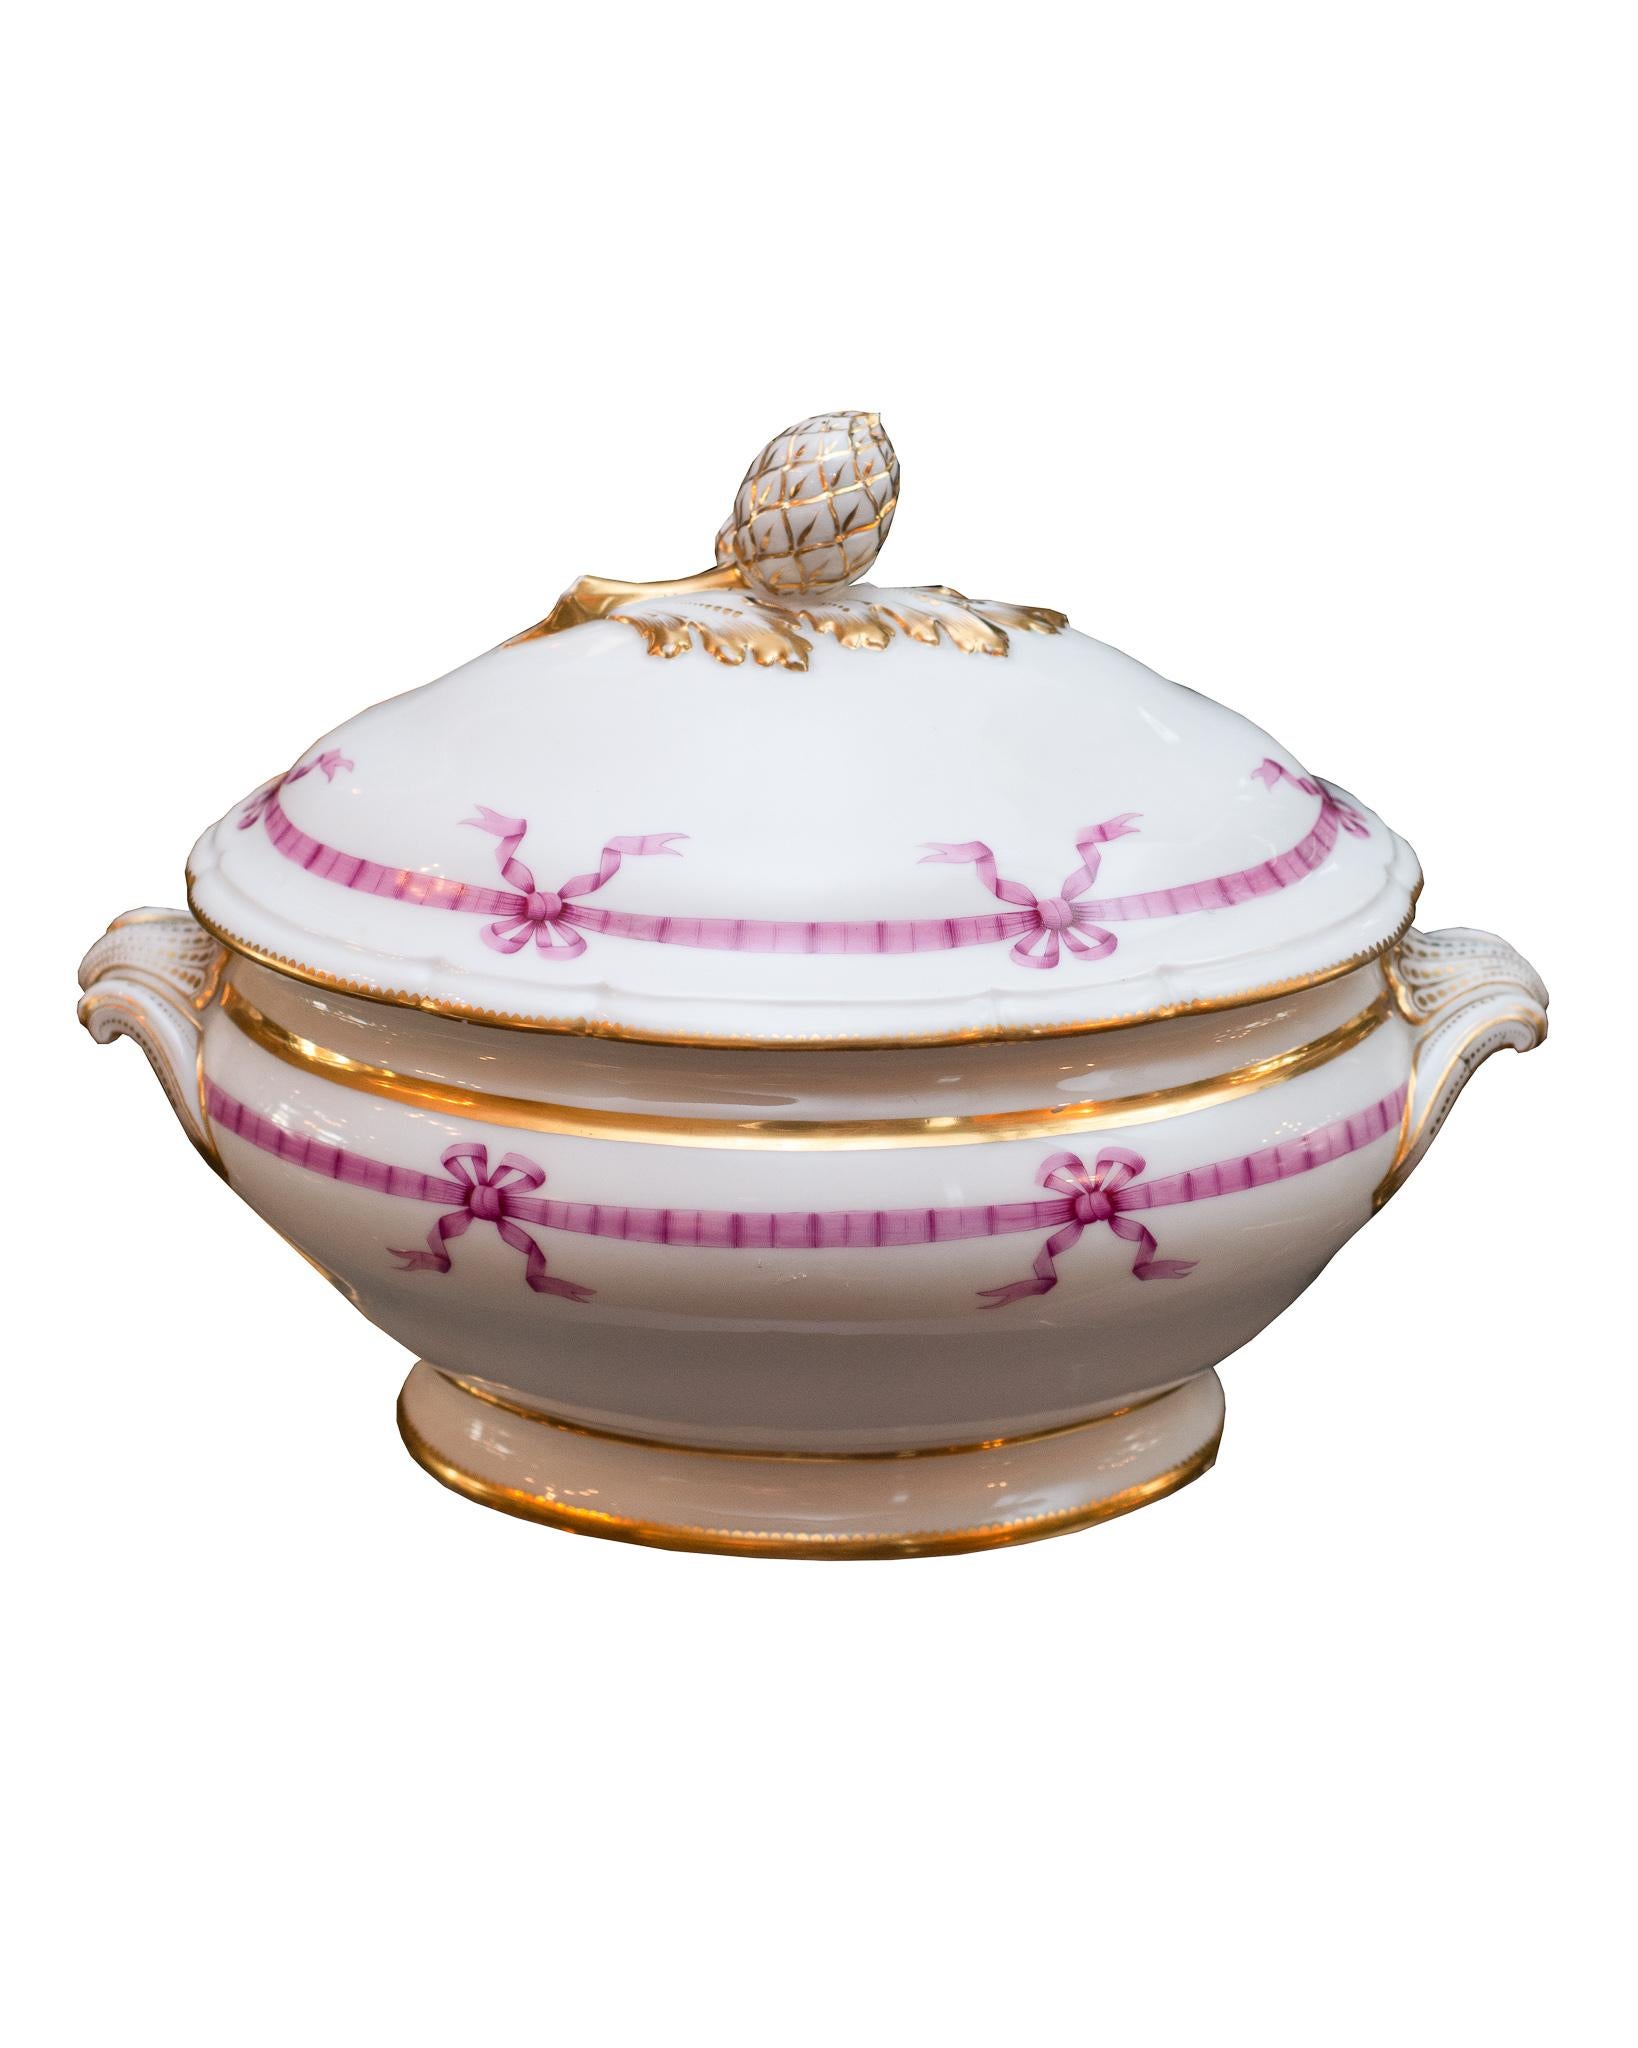 Un magnifico servizio da tavola antico francese da 22 pezzi del 1850 circa con design a nastro rosa. Il set comprende: 12 piatti da portata - diametro 9,5